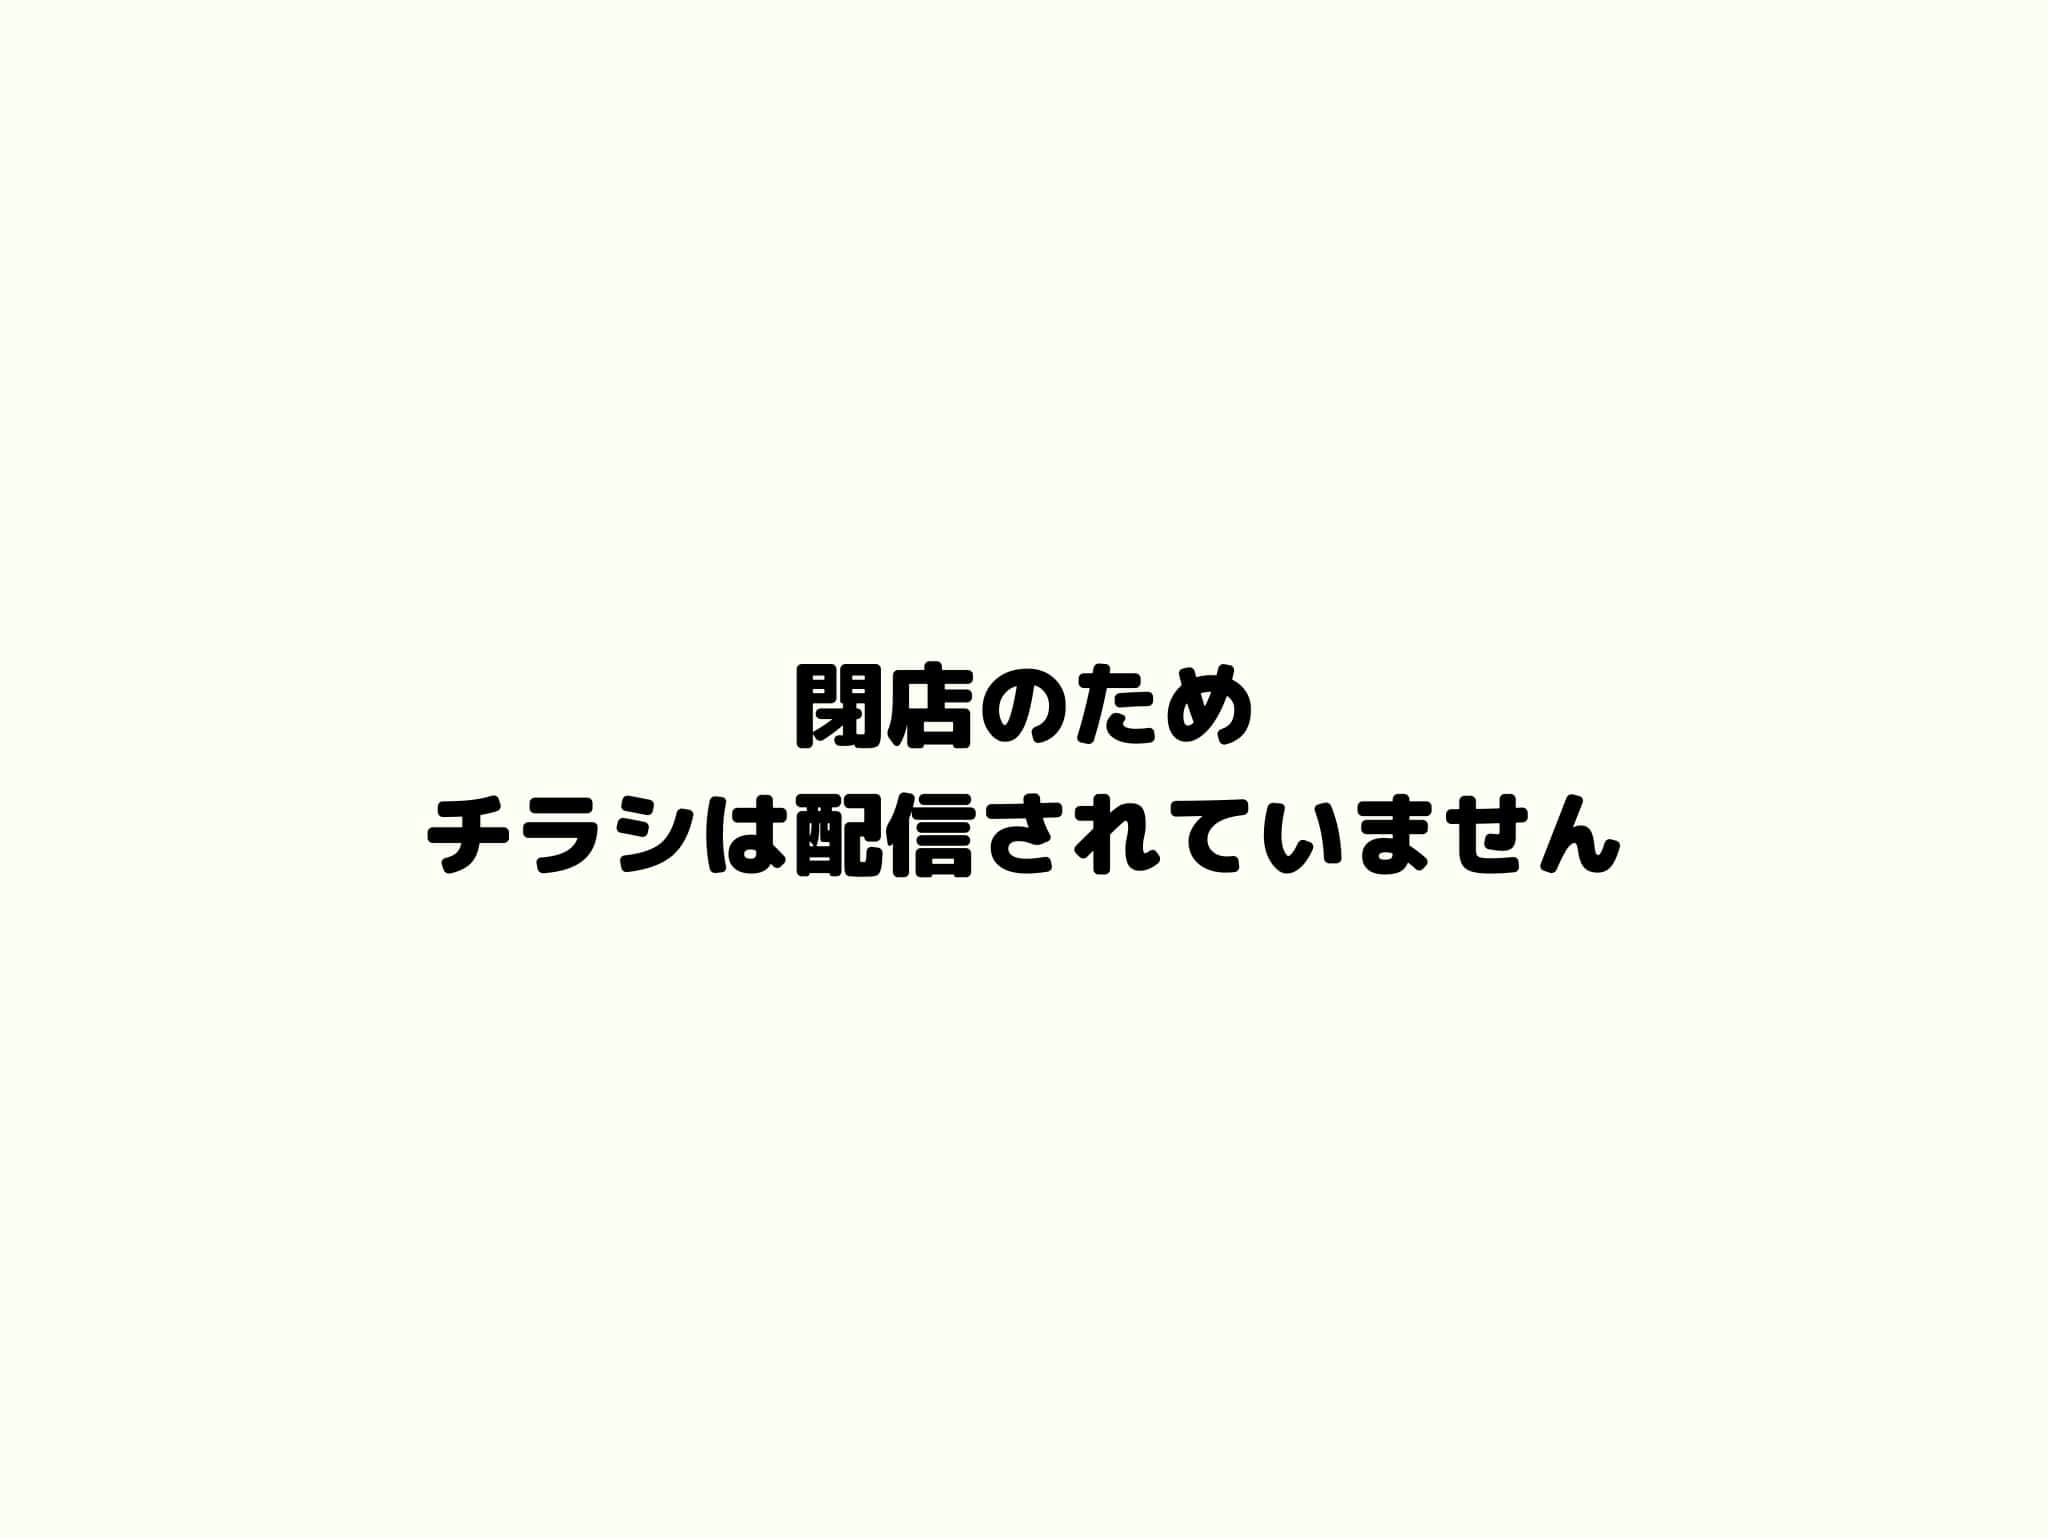 mihama_closed.jpg